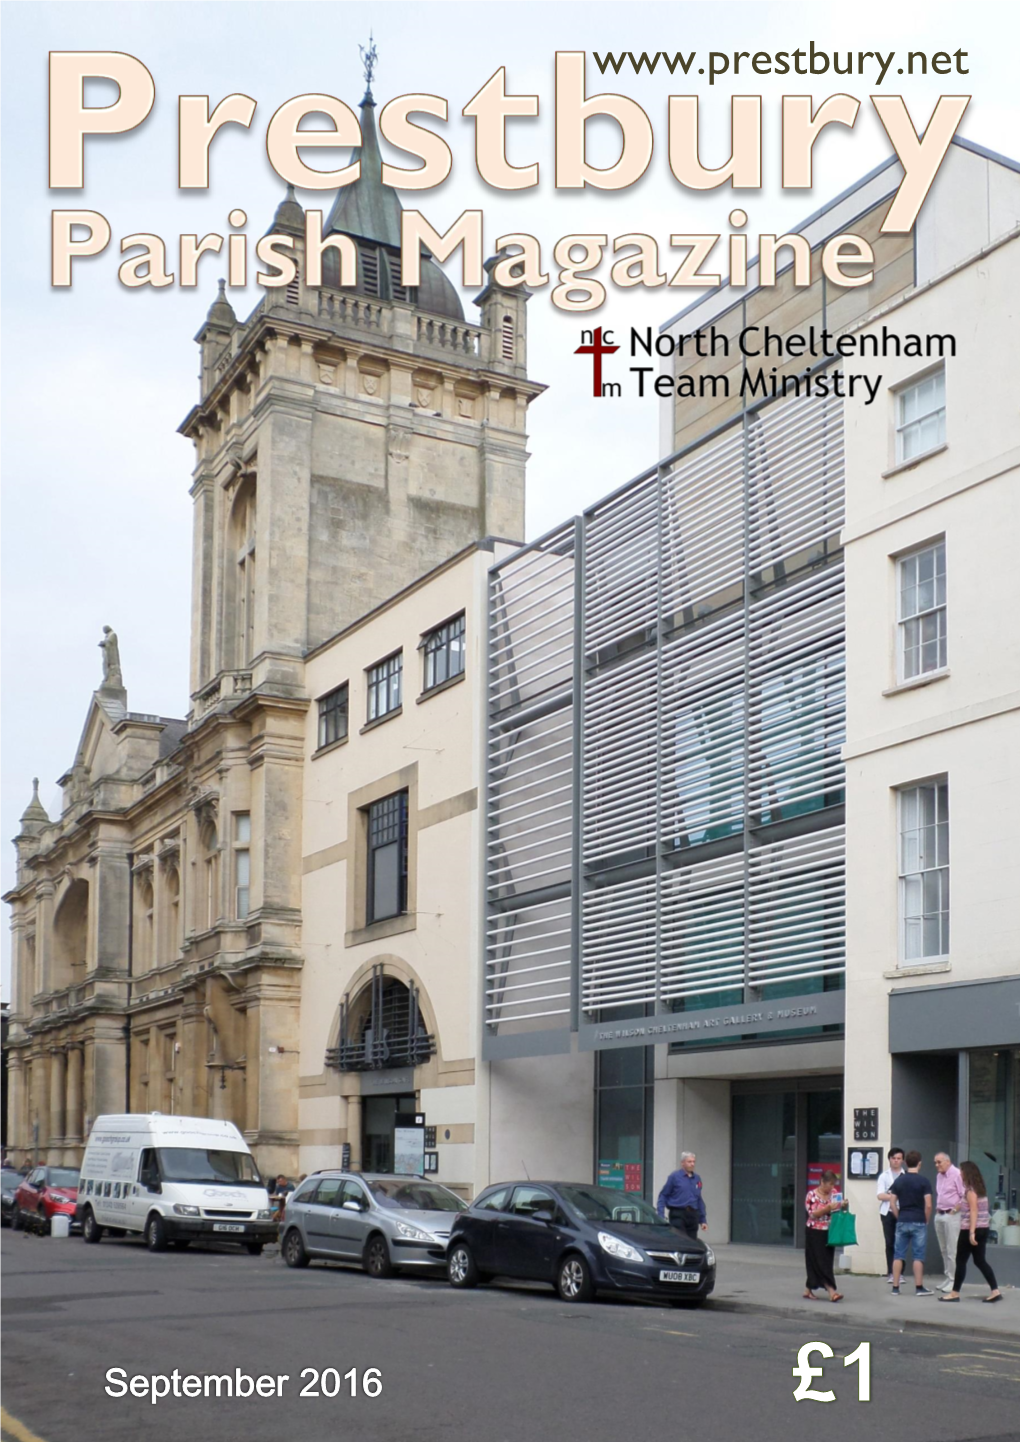 Prestbury Parish Magazine September 2016